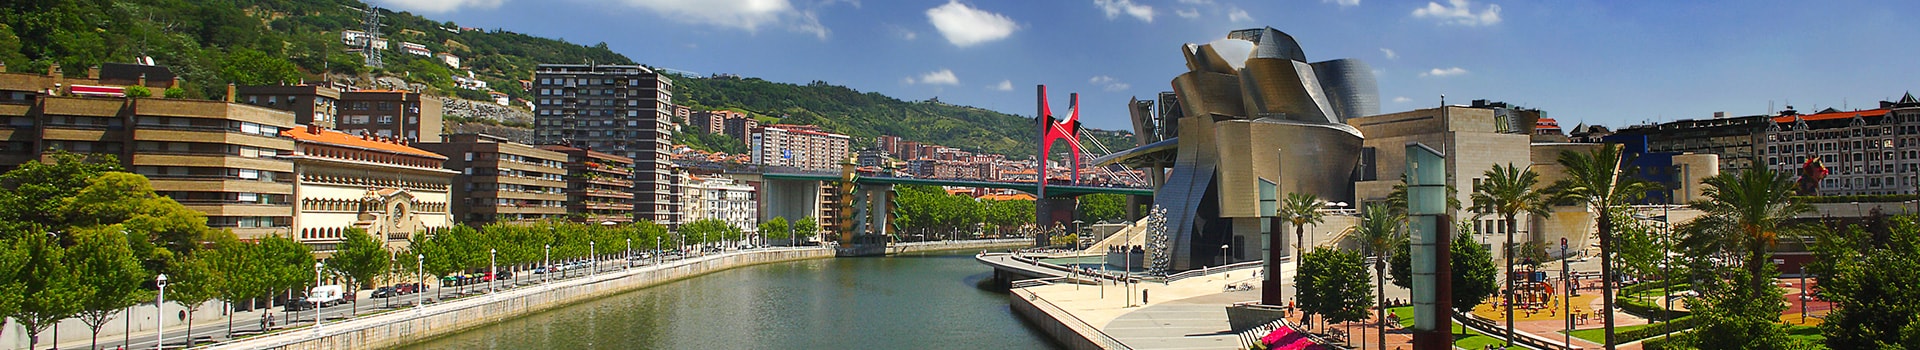 Ibiza - Bilbao